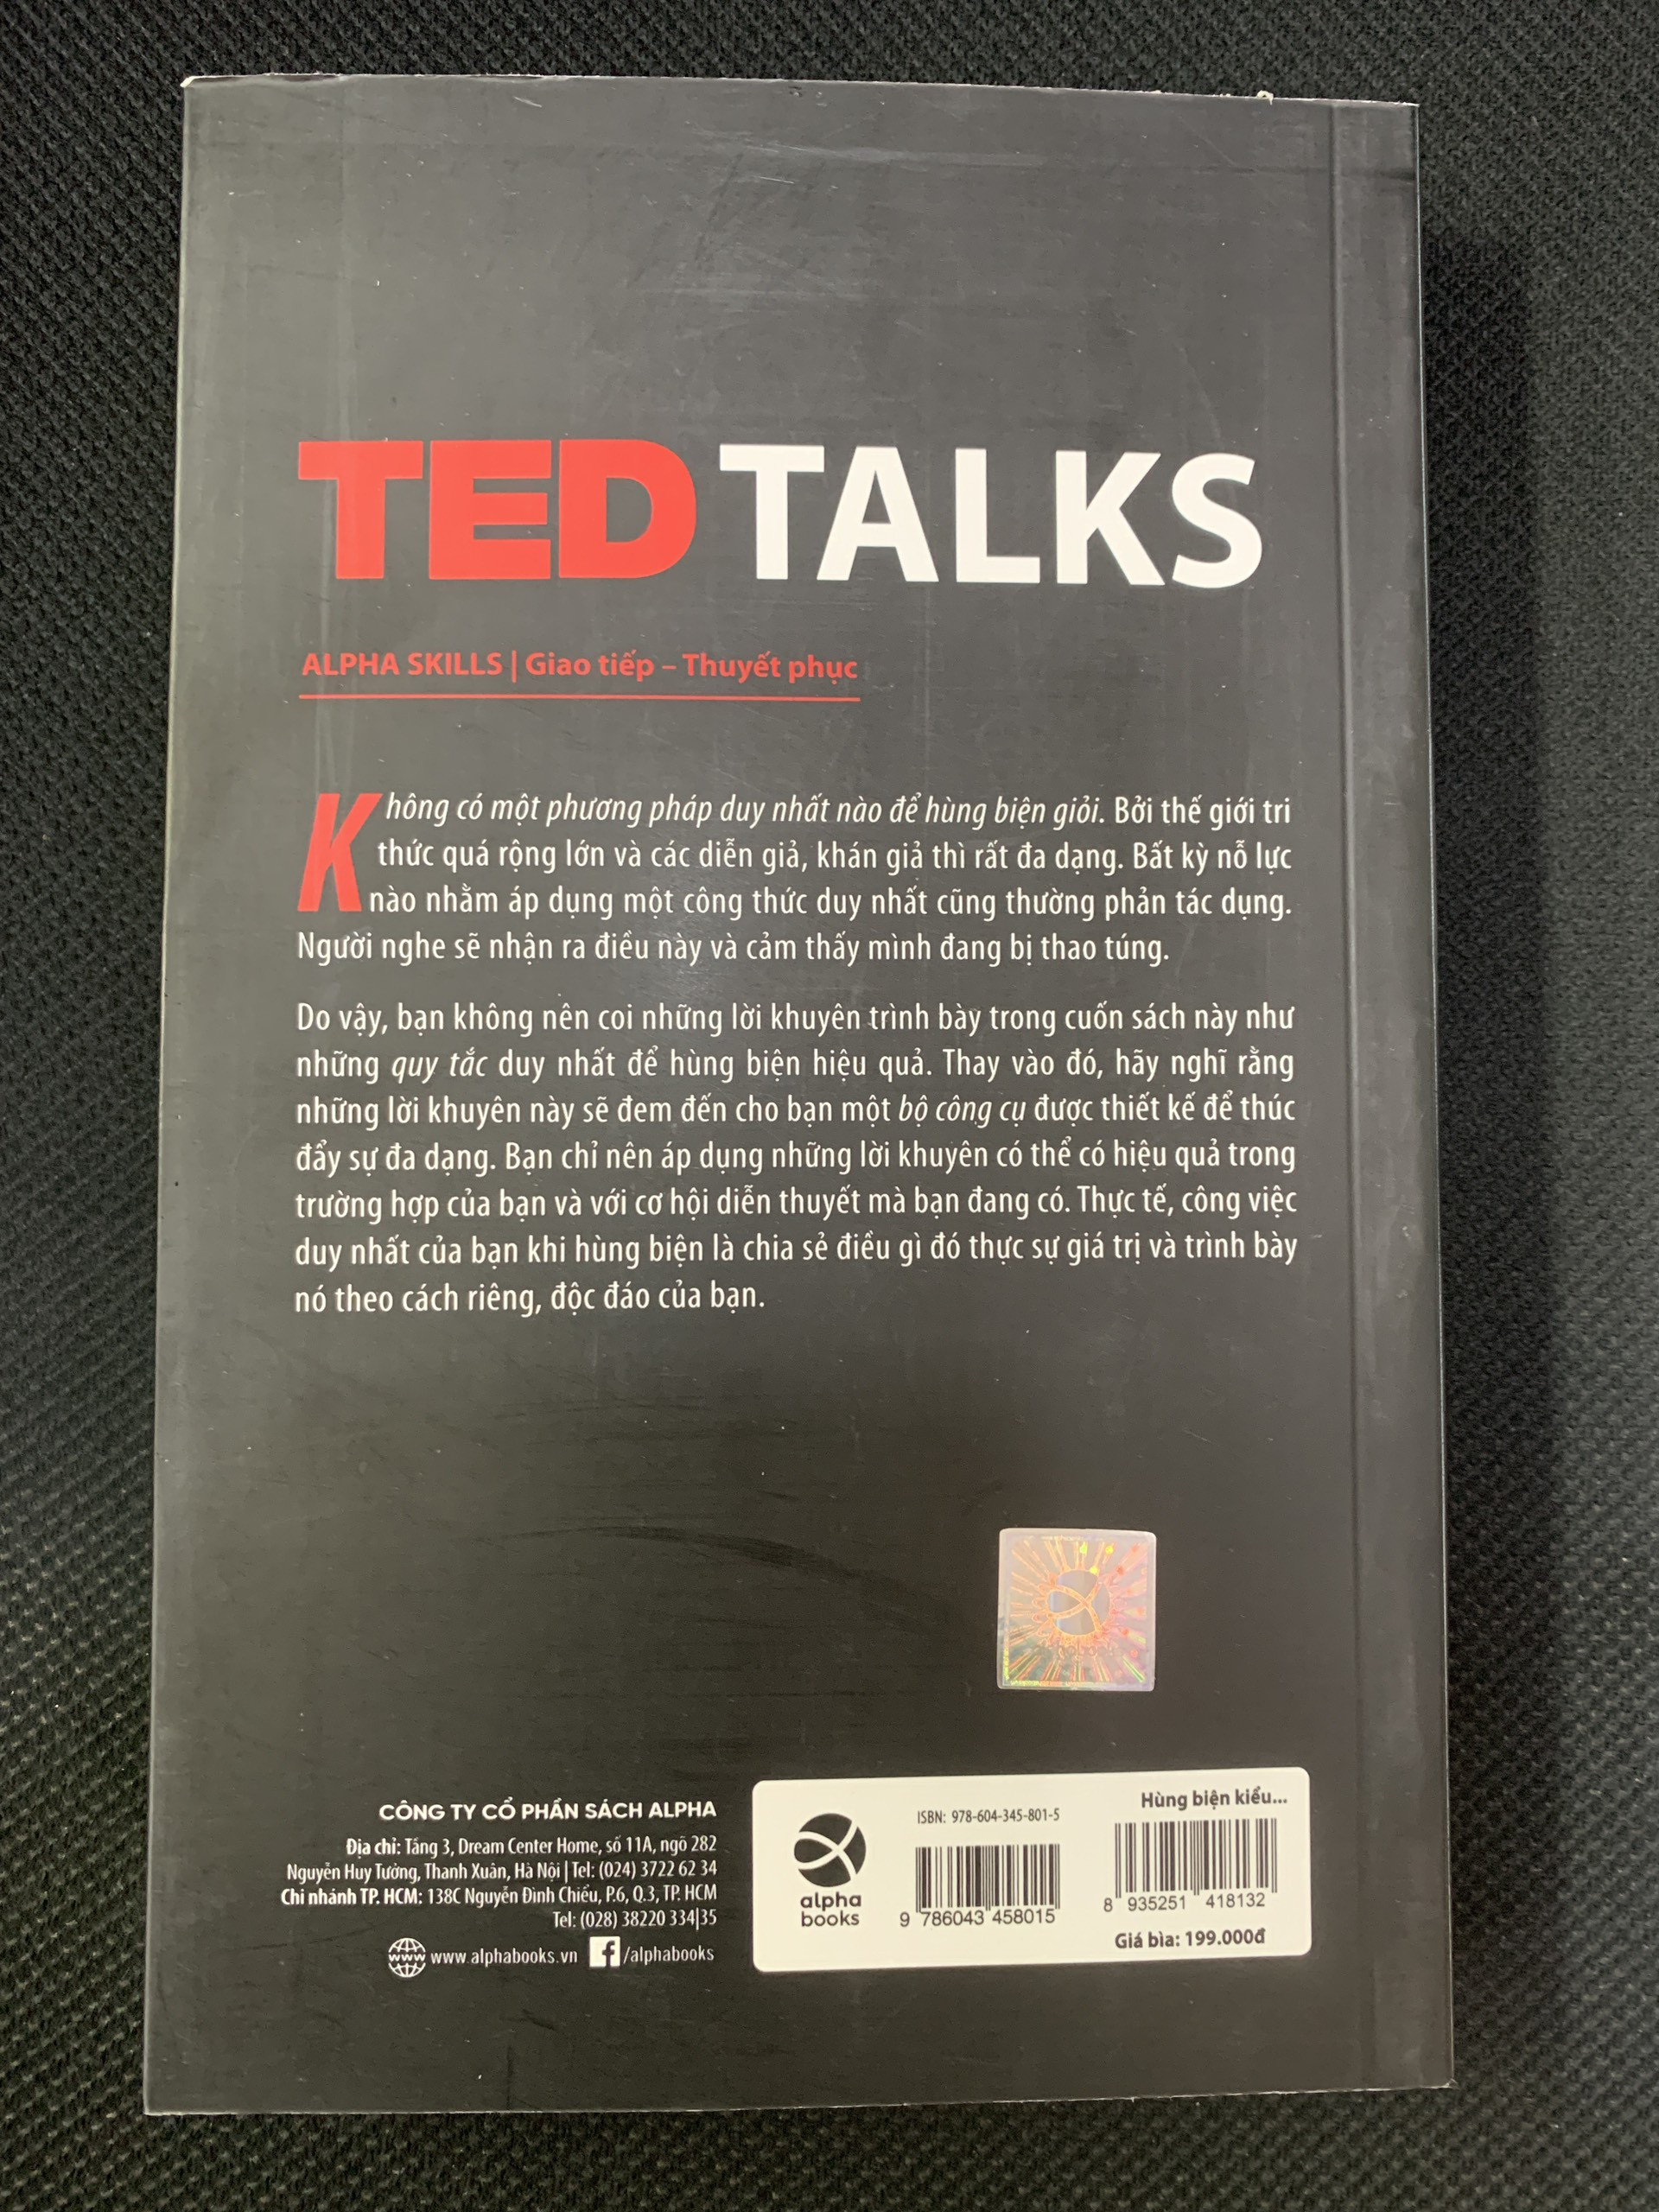 Hùng Biện Kiểu Ted 1 - TED TALKS: Bí quyết diễn thuyết trước đám đông &quot;chuẩn&quot; TED - Chris Anderson - Hồng Hạnh dịch - (bìa mềm)